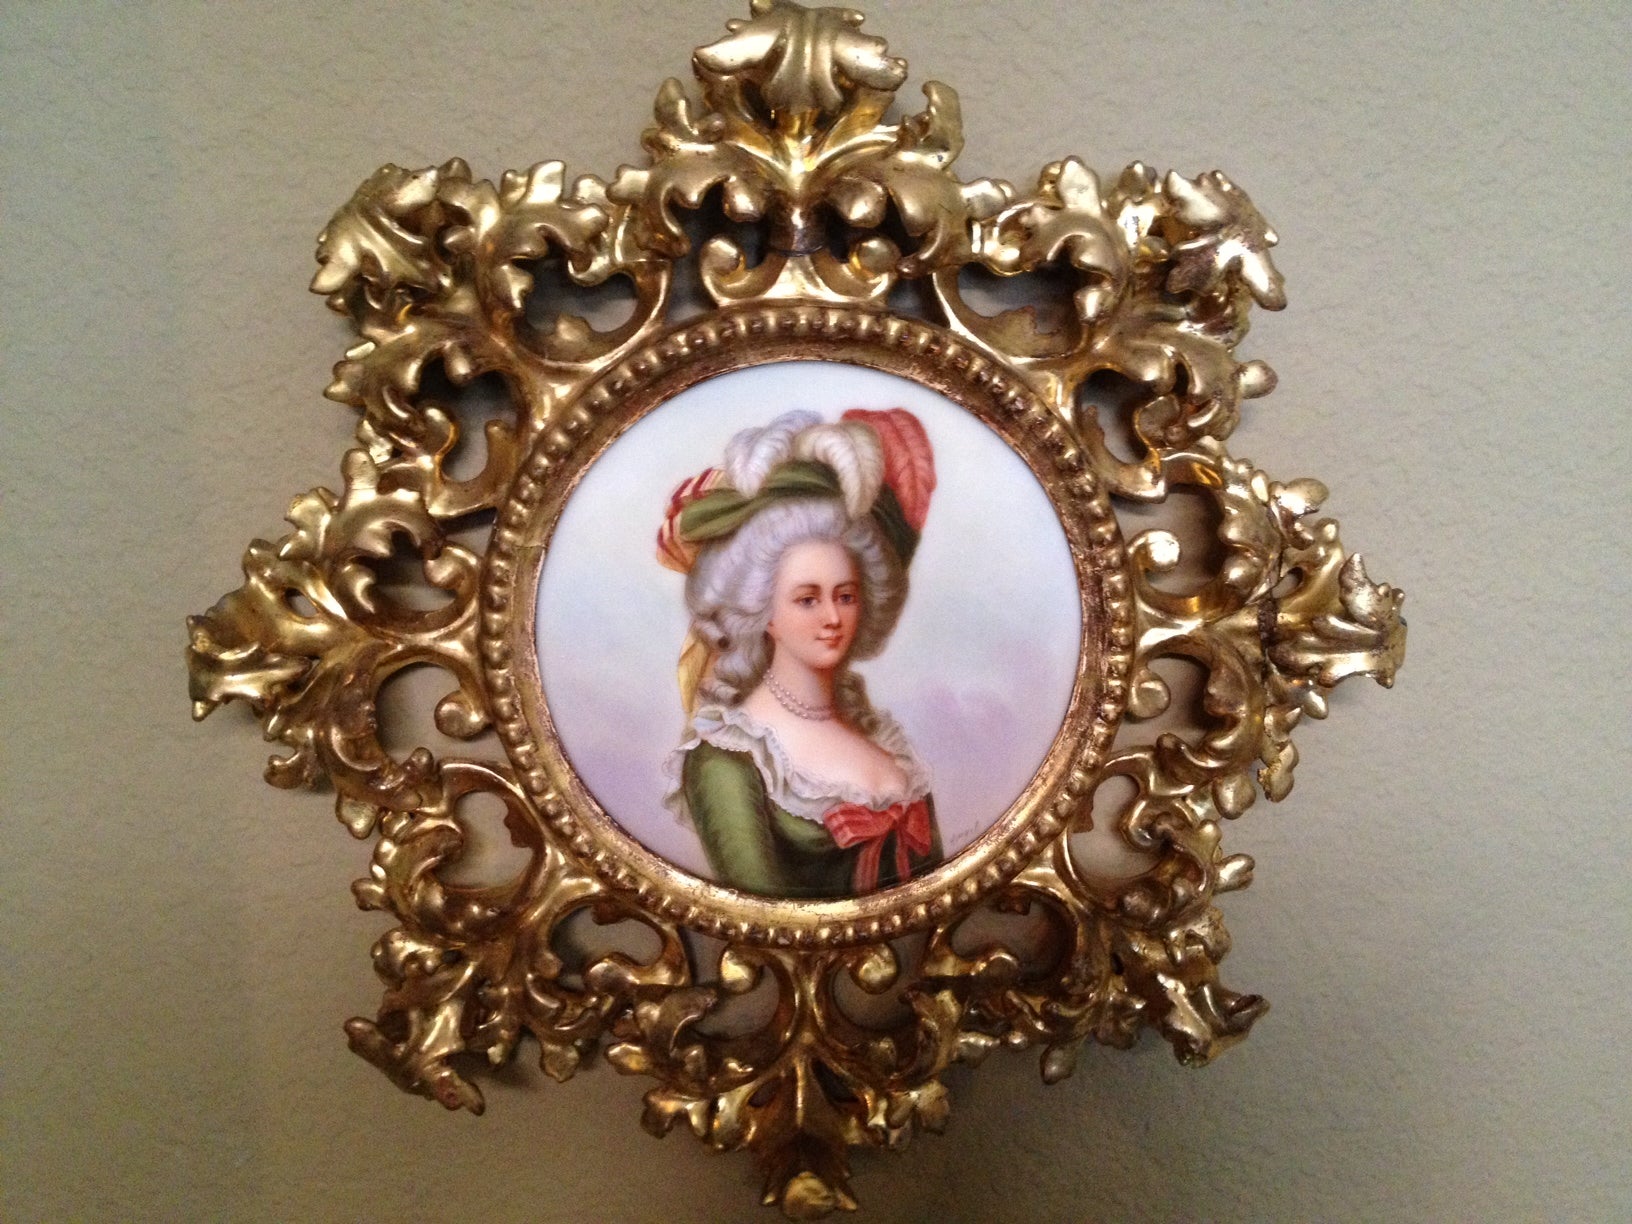 19th Century Italian Porcelain Plaque of Marie Antoinette Gilt Frame